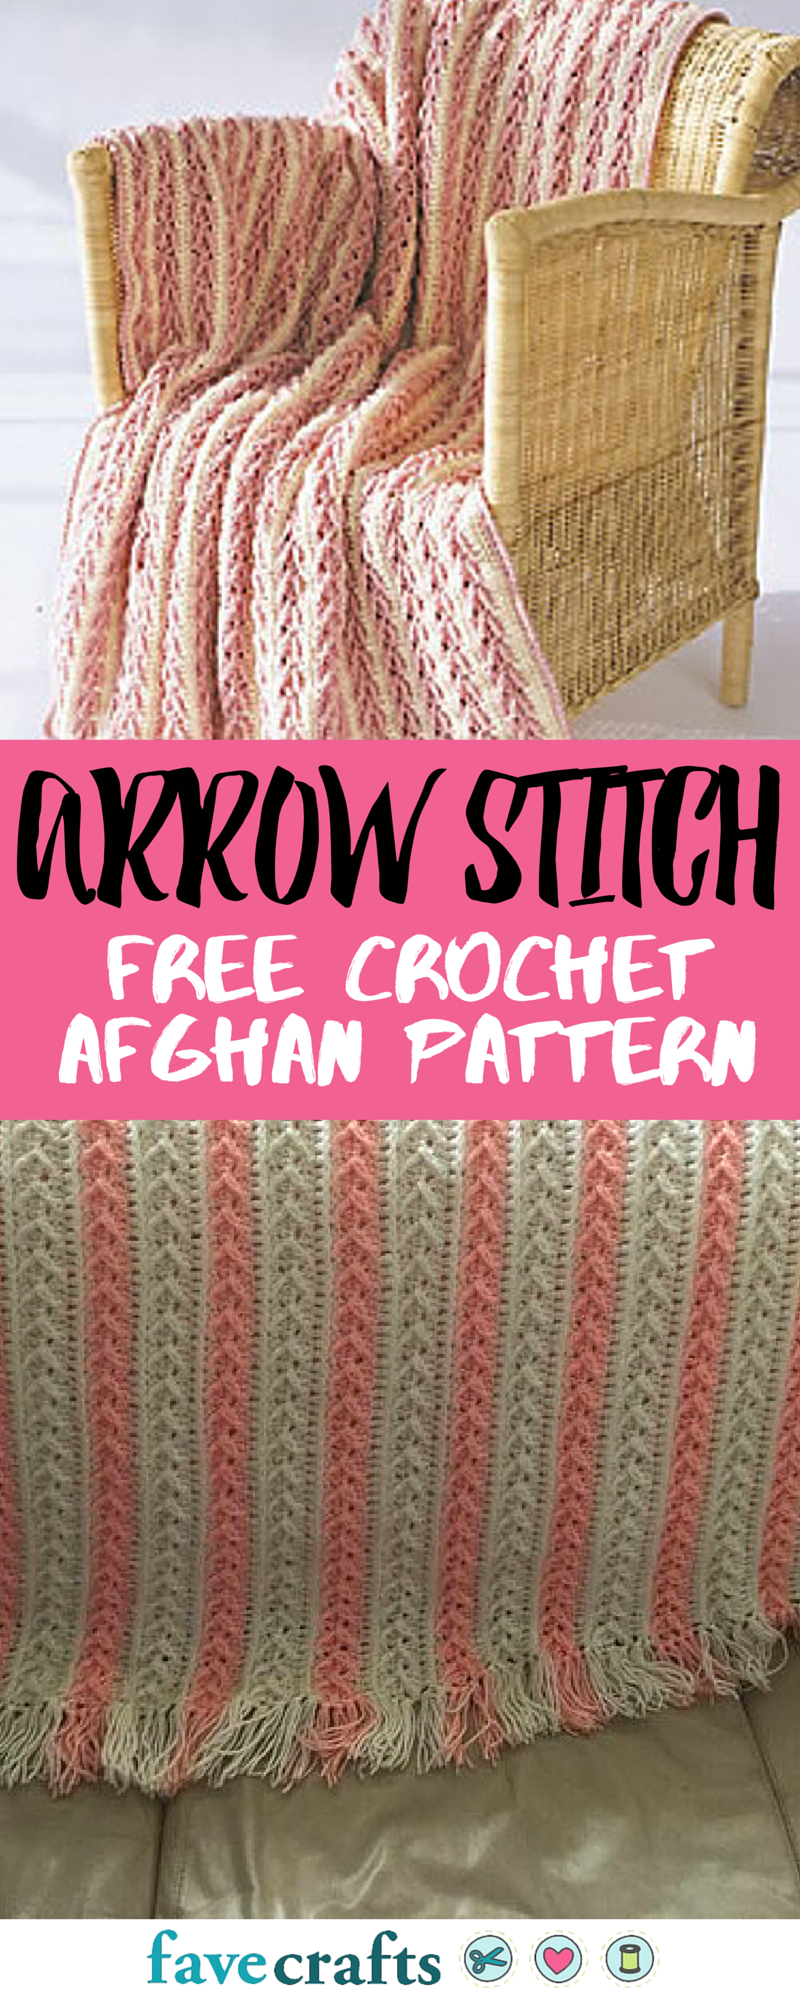 Free Afghan Stitch Crochet Patterns Arrow Stitch Crochet Afghan Crocheted Pinterest Crochet